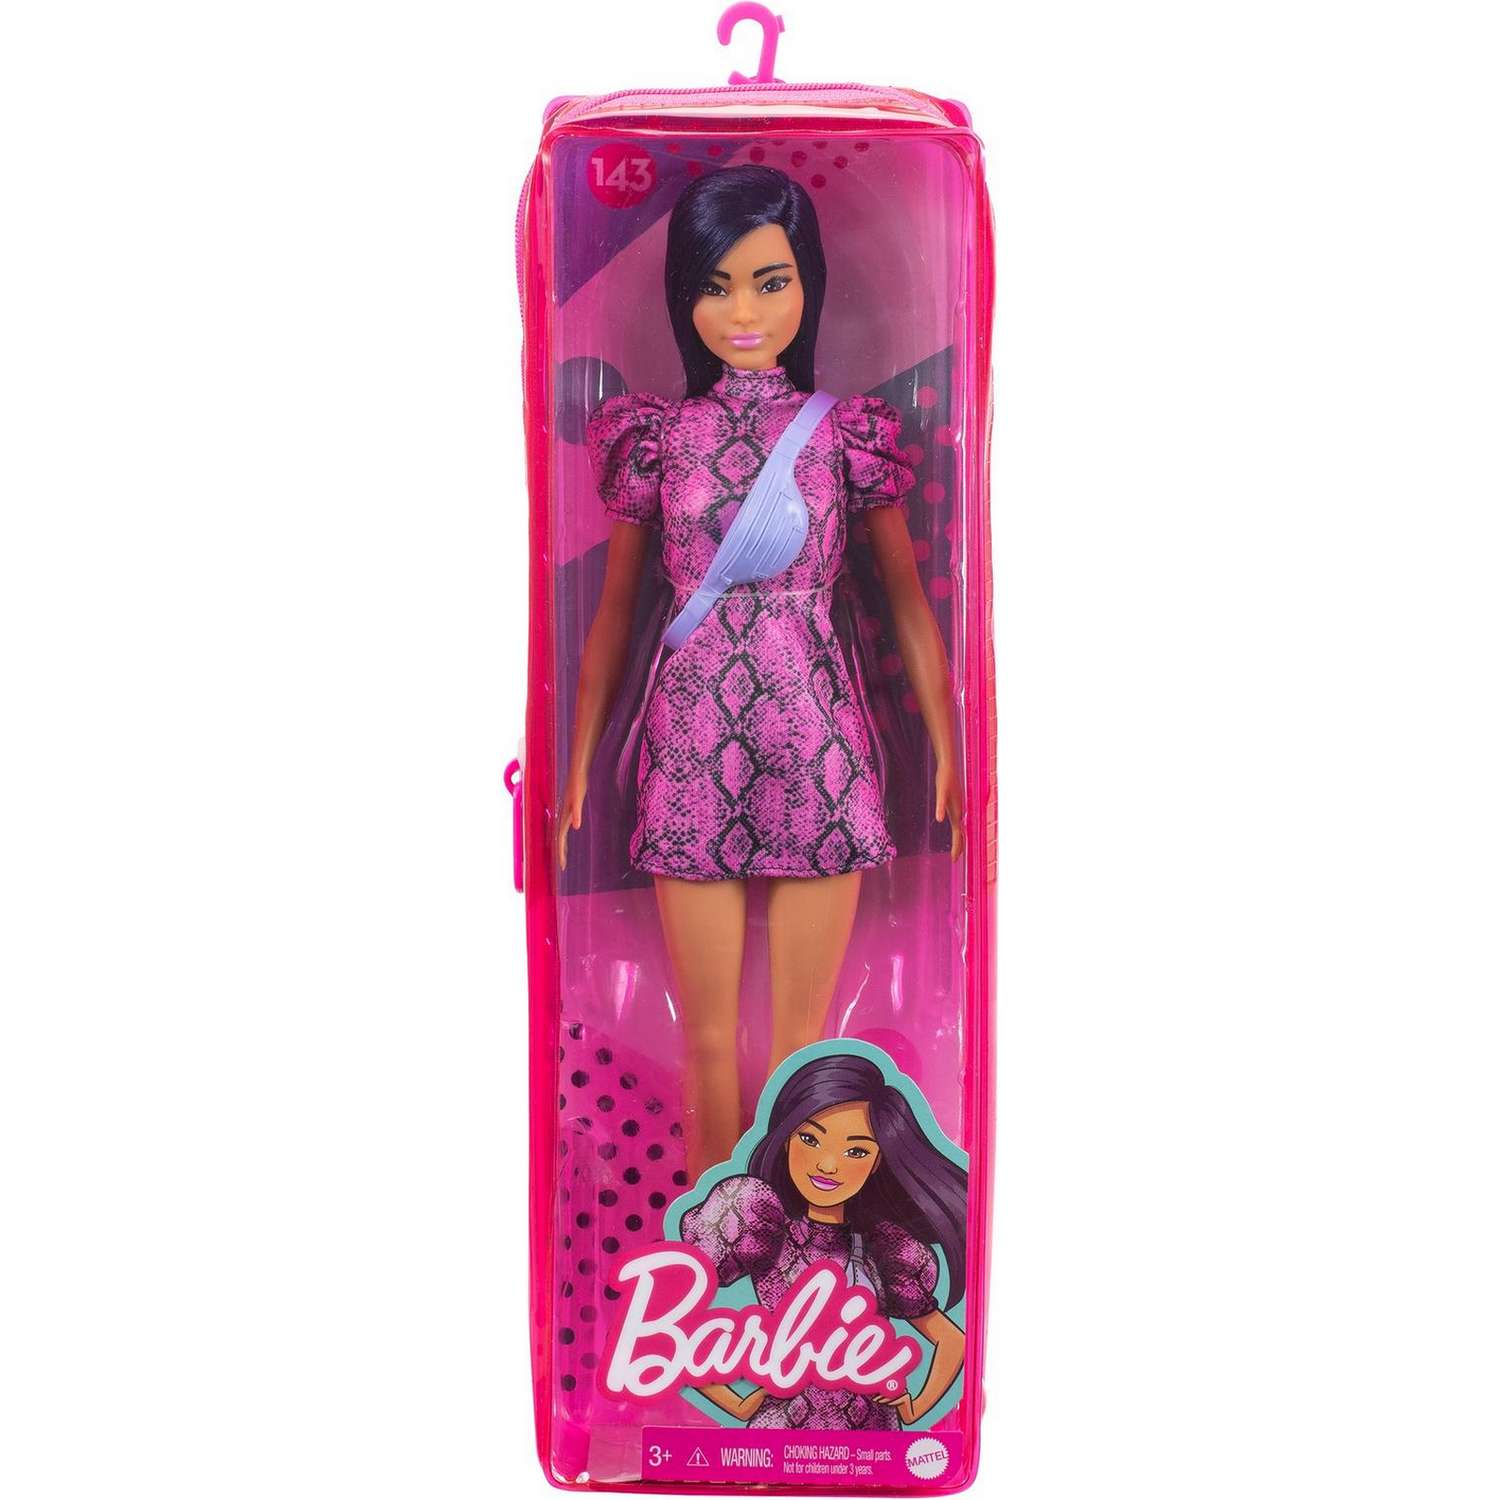 Кукла Barbie Игра с модой 143 GXY99 FBR37 - фото 2